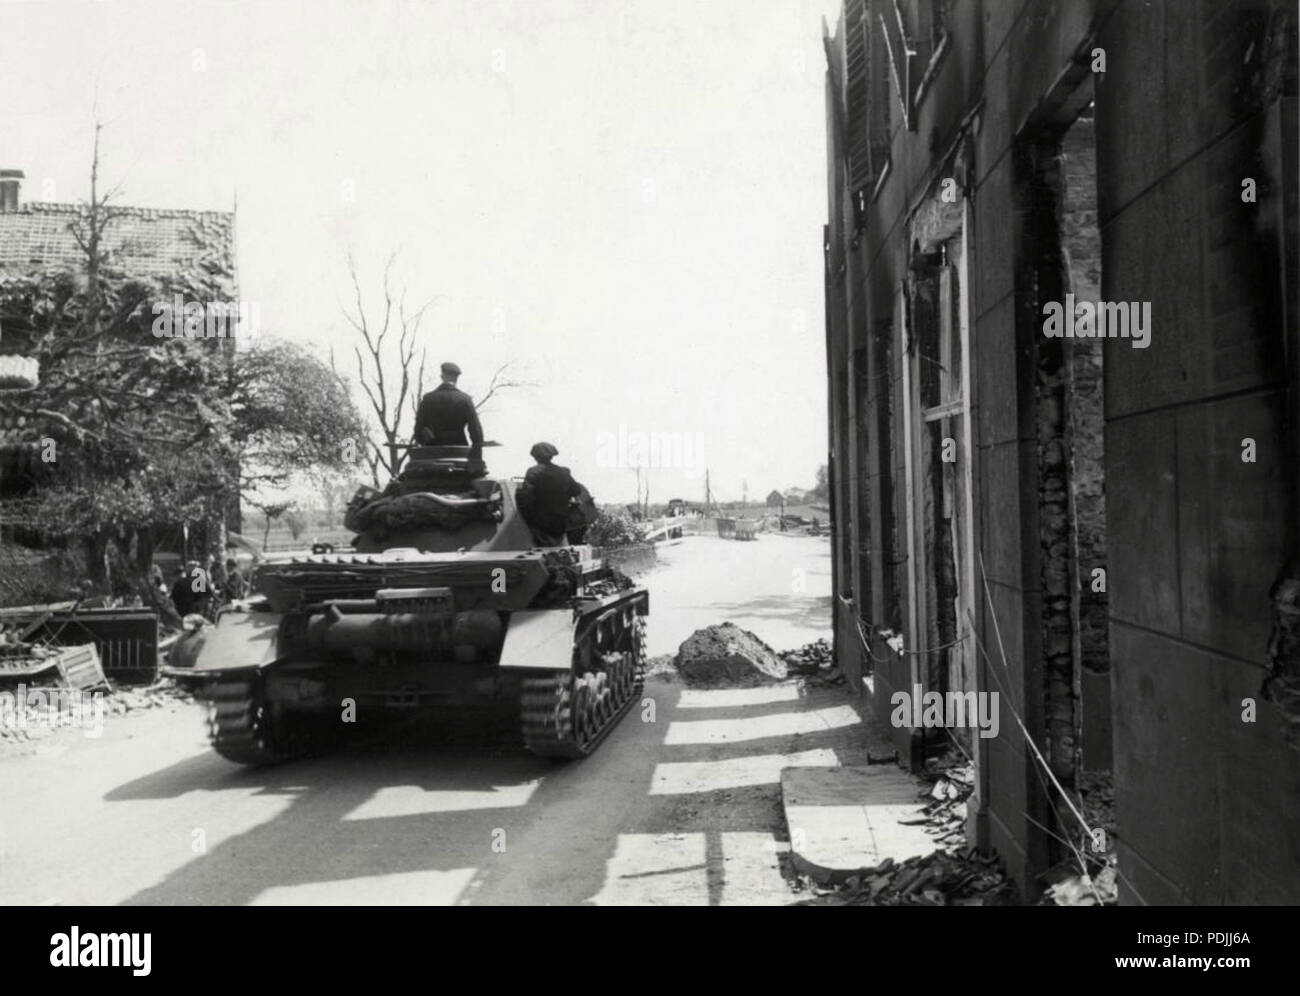 361 Tweede Wereldoorlog, meidagen 1940 Nederland. Een Duitse tank op weg naar de Stellingen bij de Grebbeberg Stockfoto